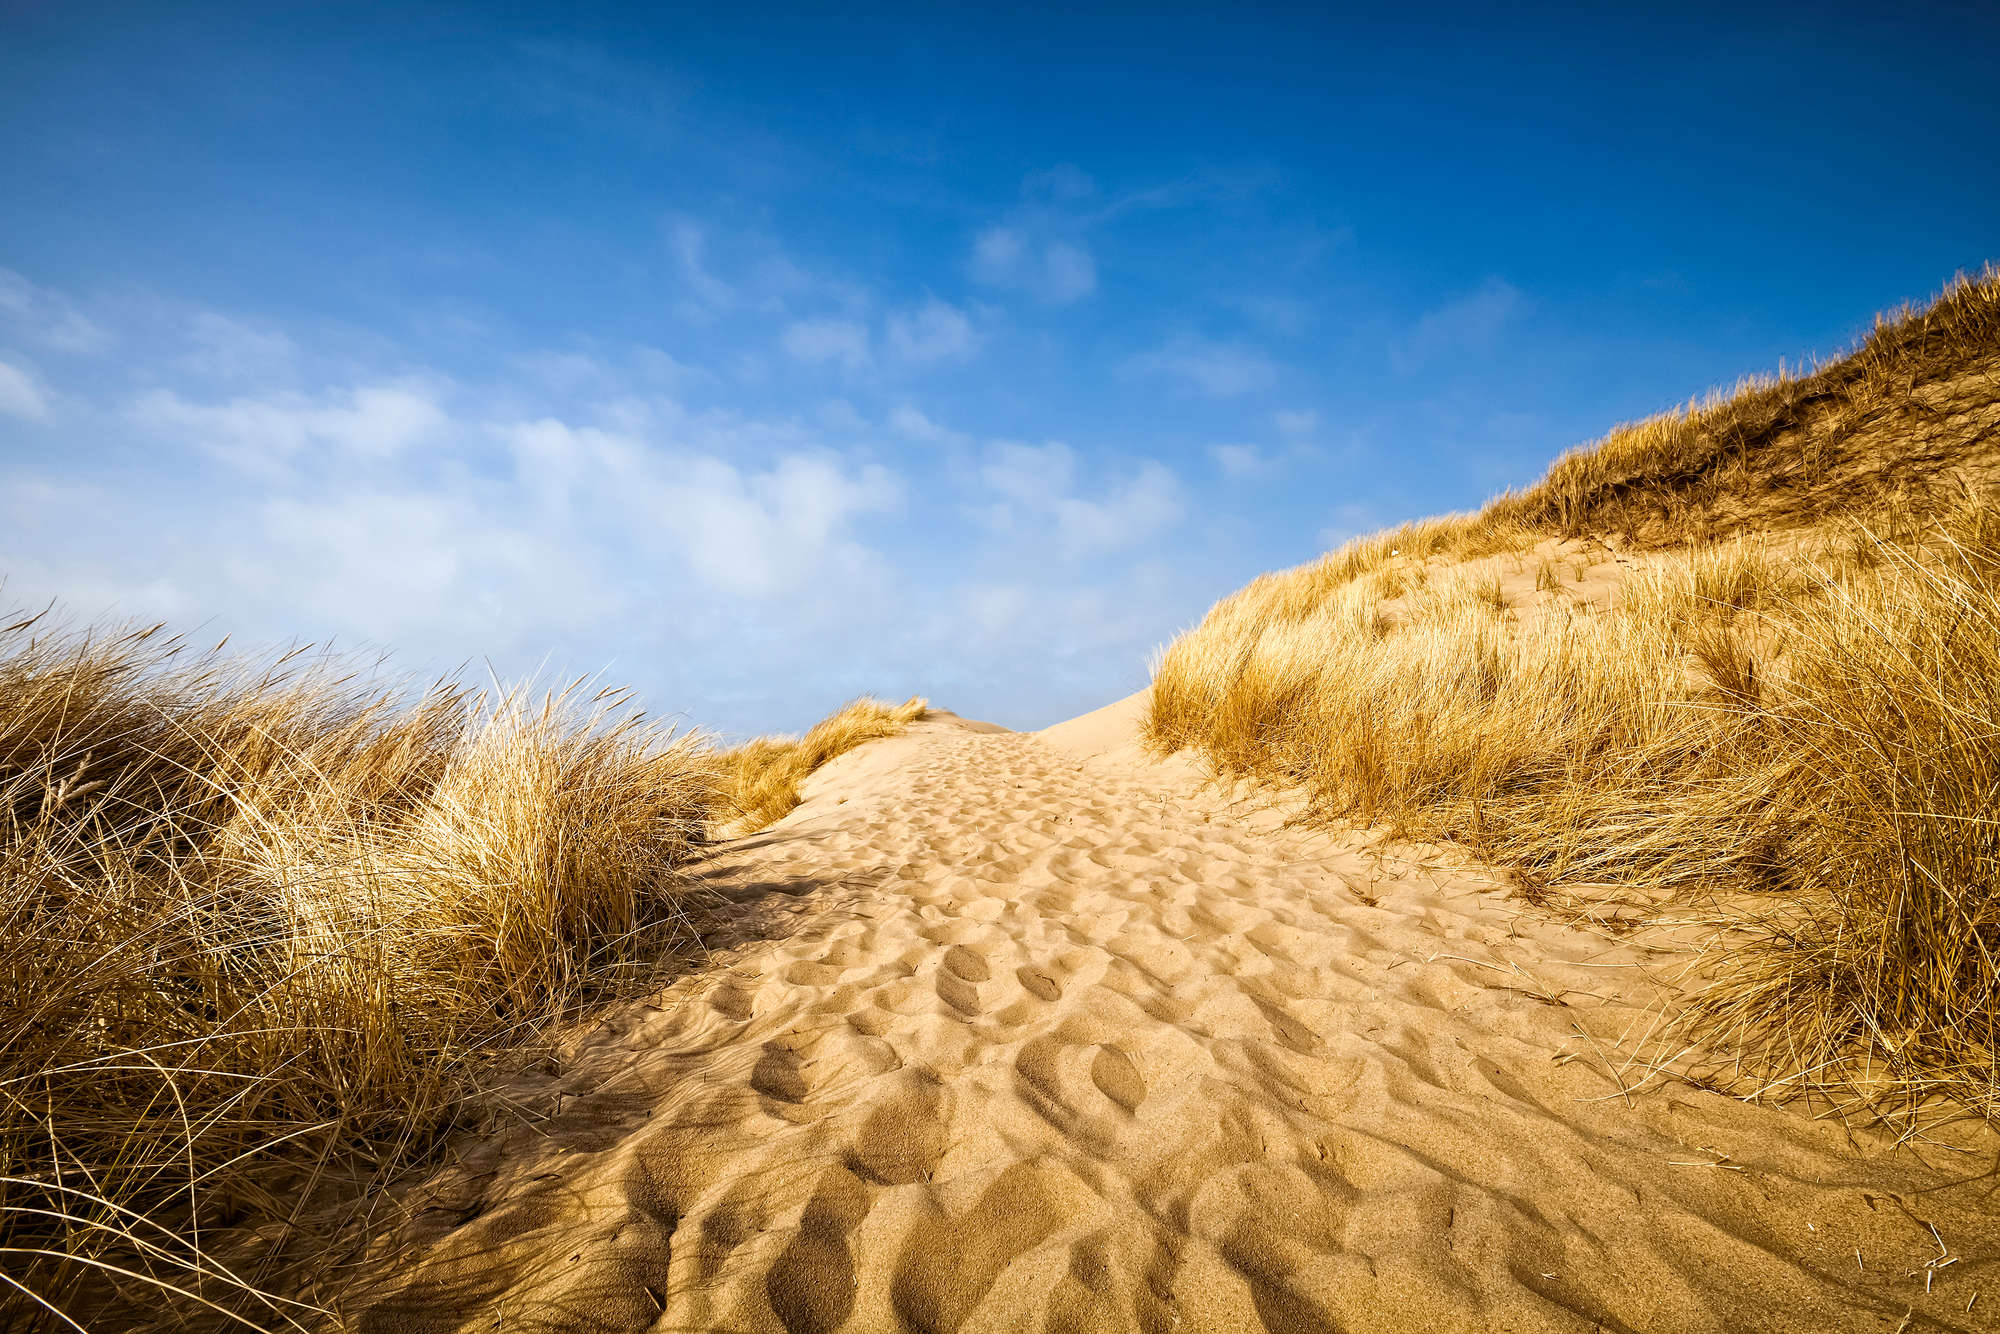             Fotomurali da spiaggia con motivo di dune su tessuto non tessuto testurizzato
        